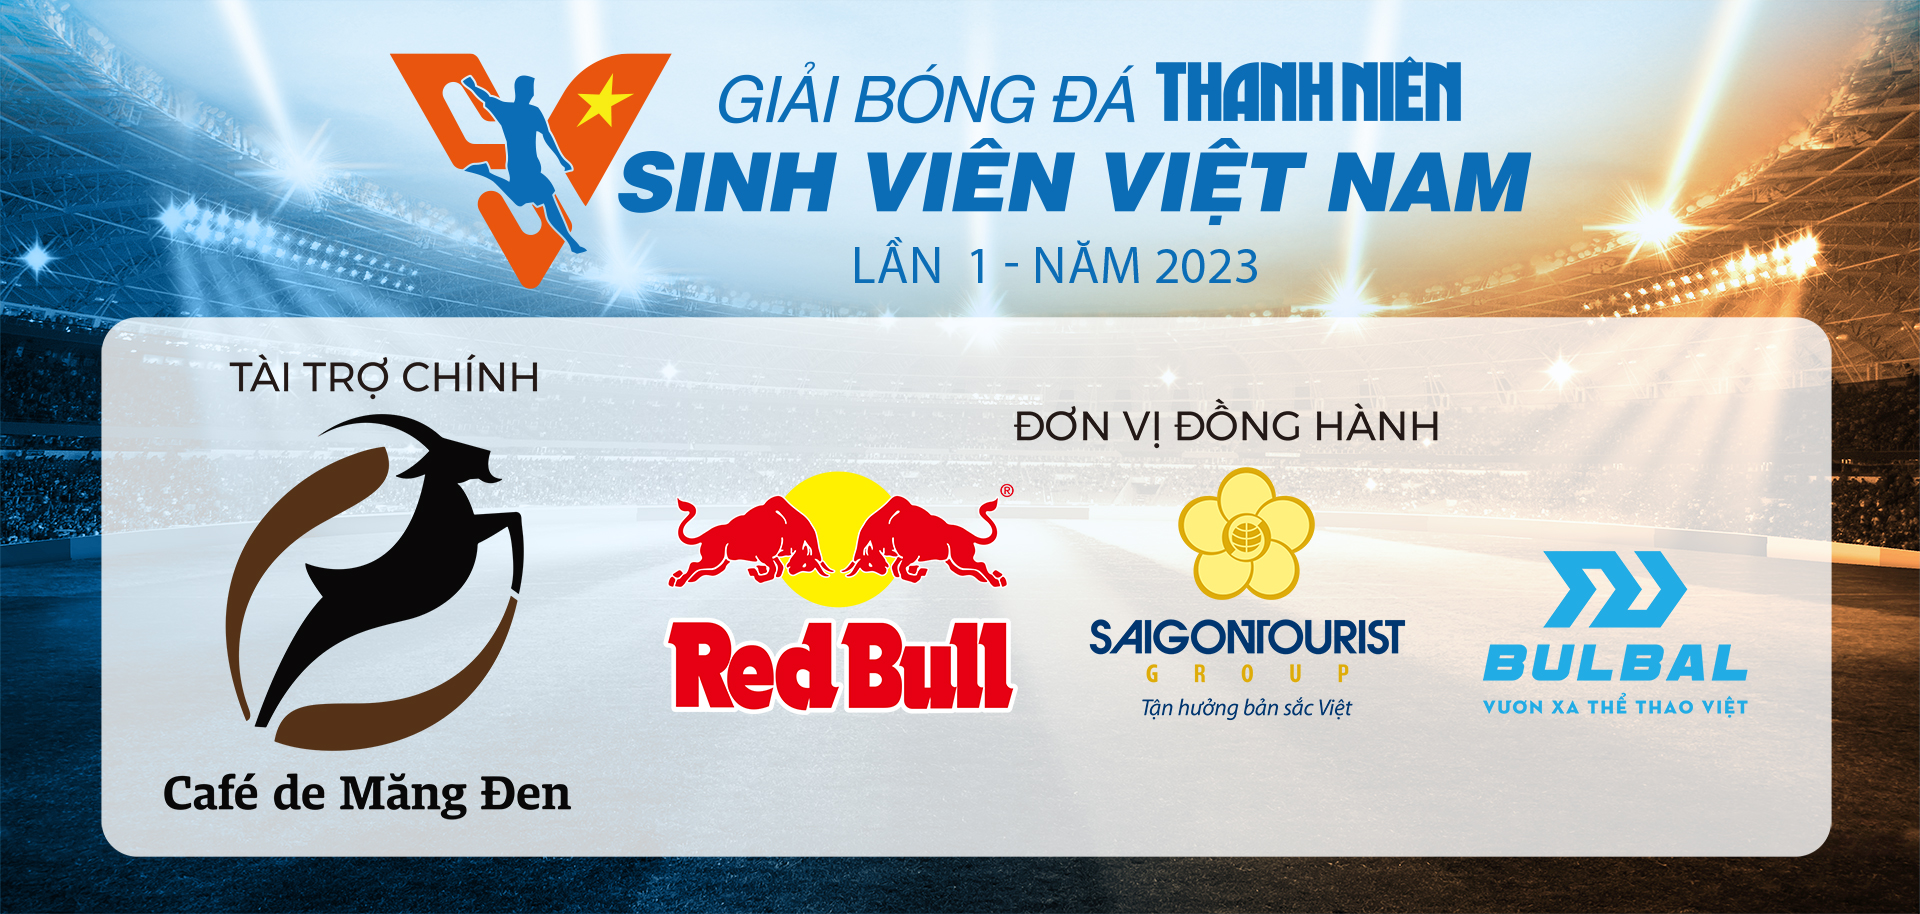 Bóng đá sinh viên Việt Nam 